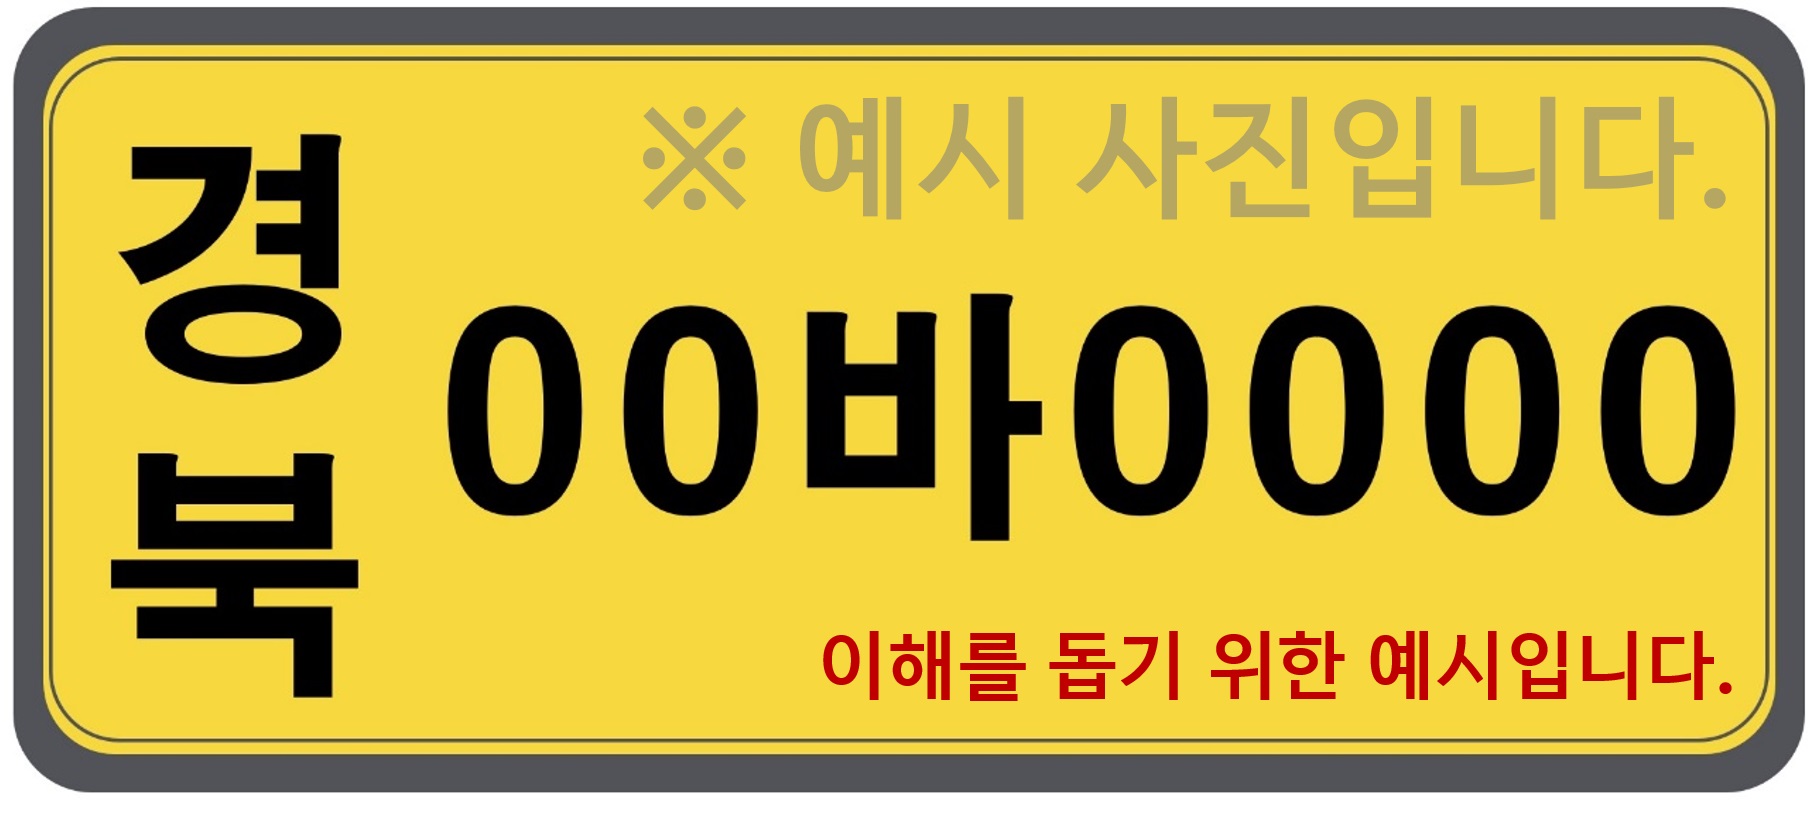 예시 차량번호